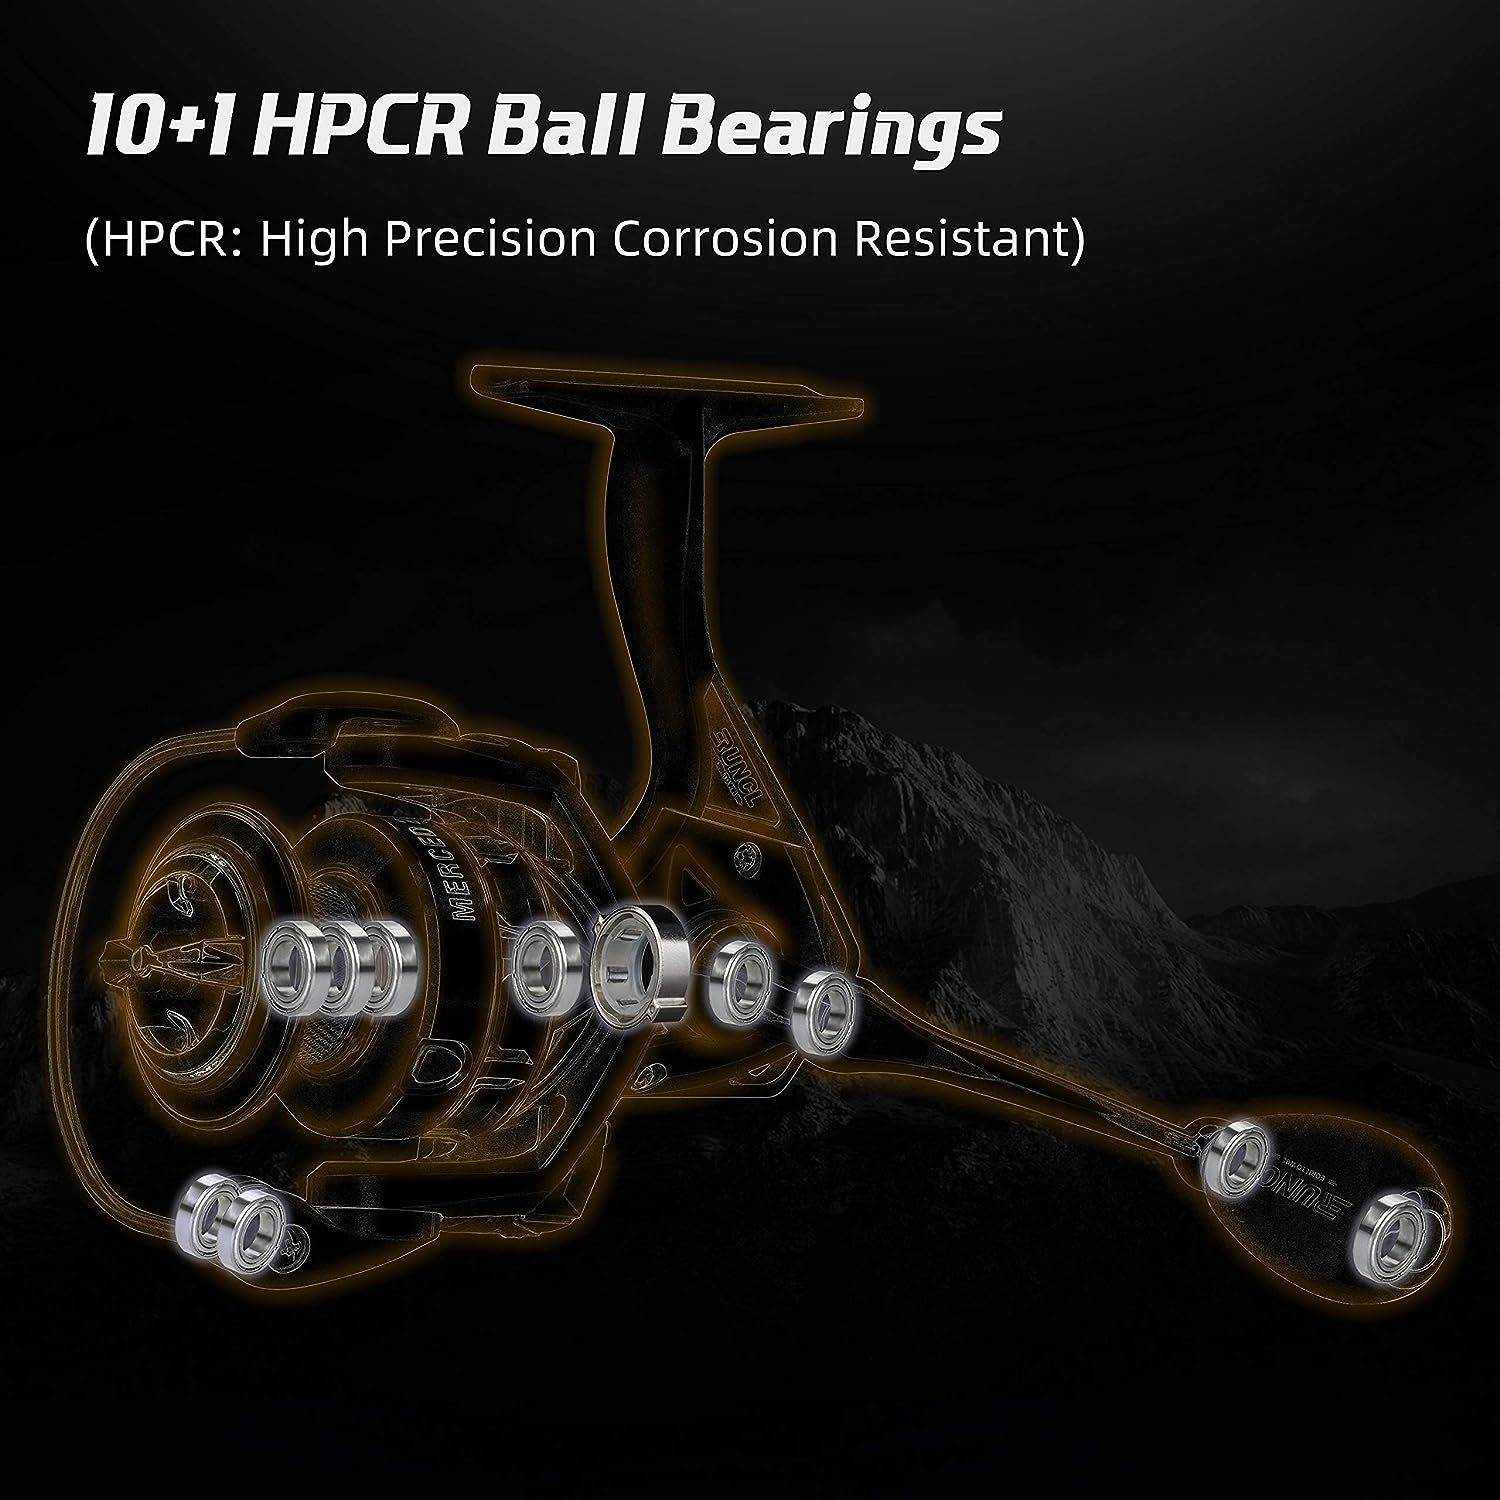 RUNCL Spinning Fishing Reel Merced, Spinning Reel - 10+1 HPCR Ball